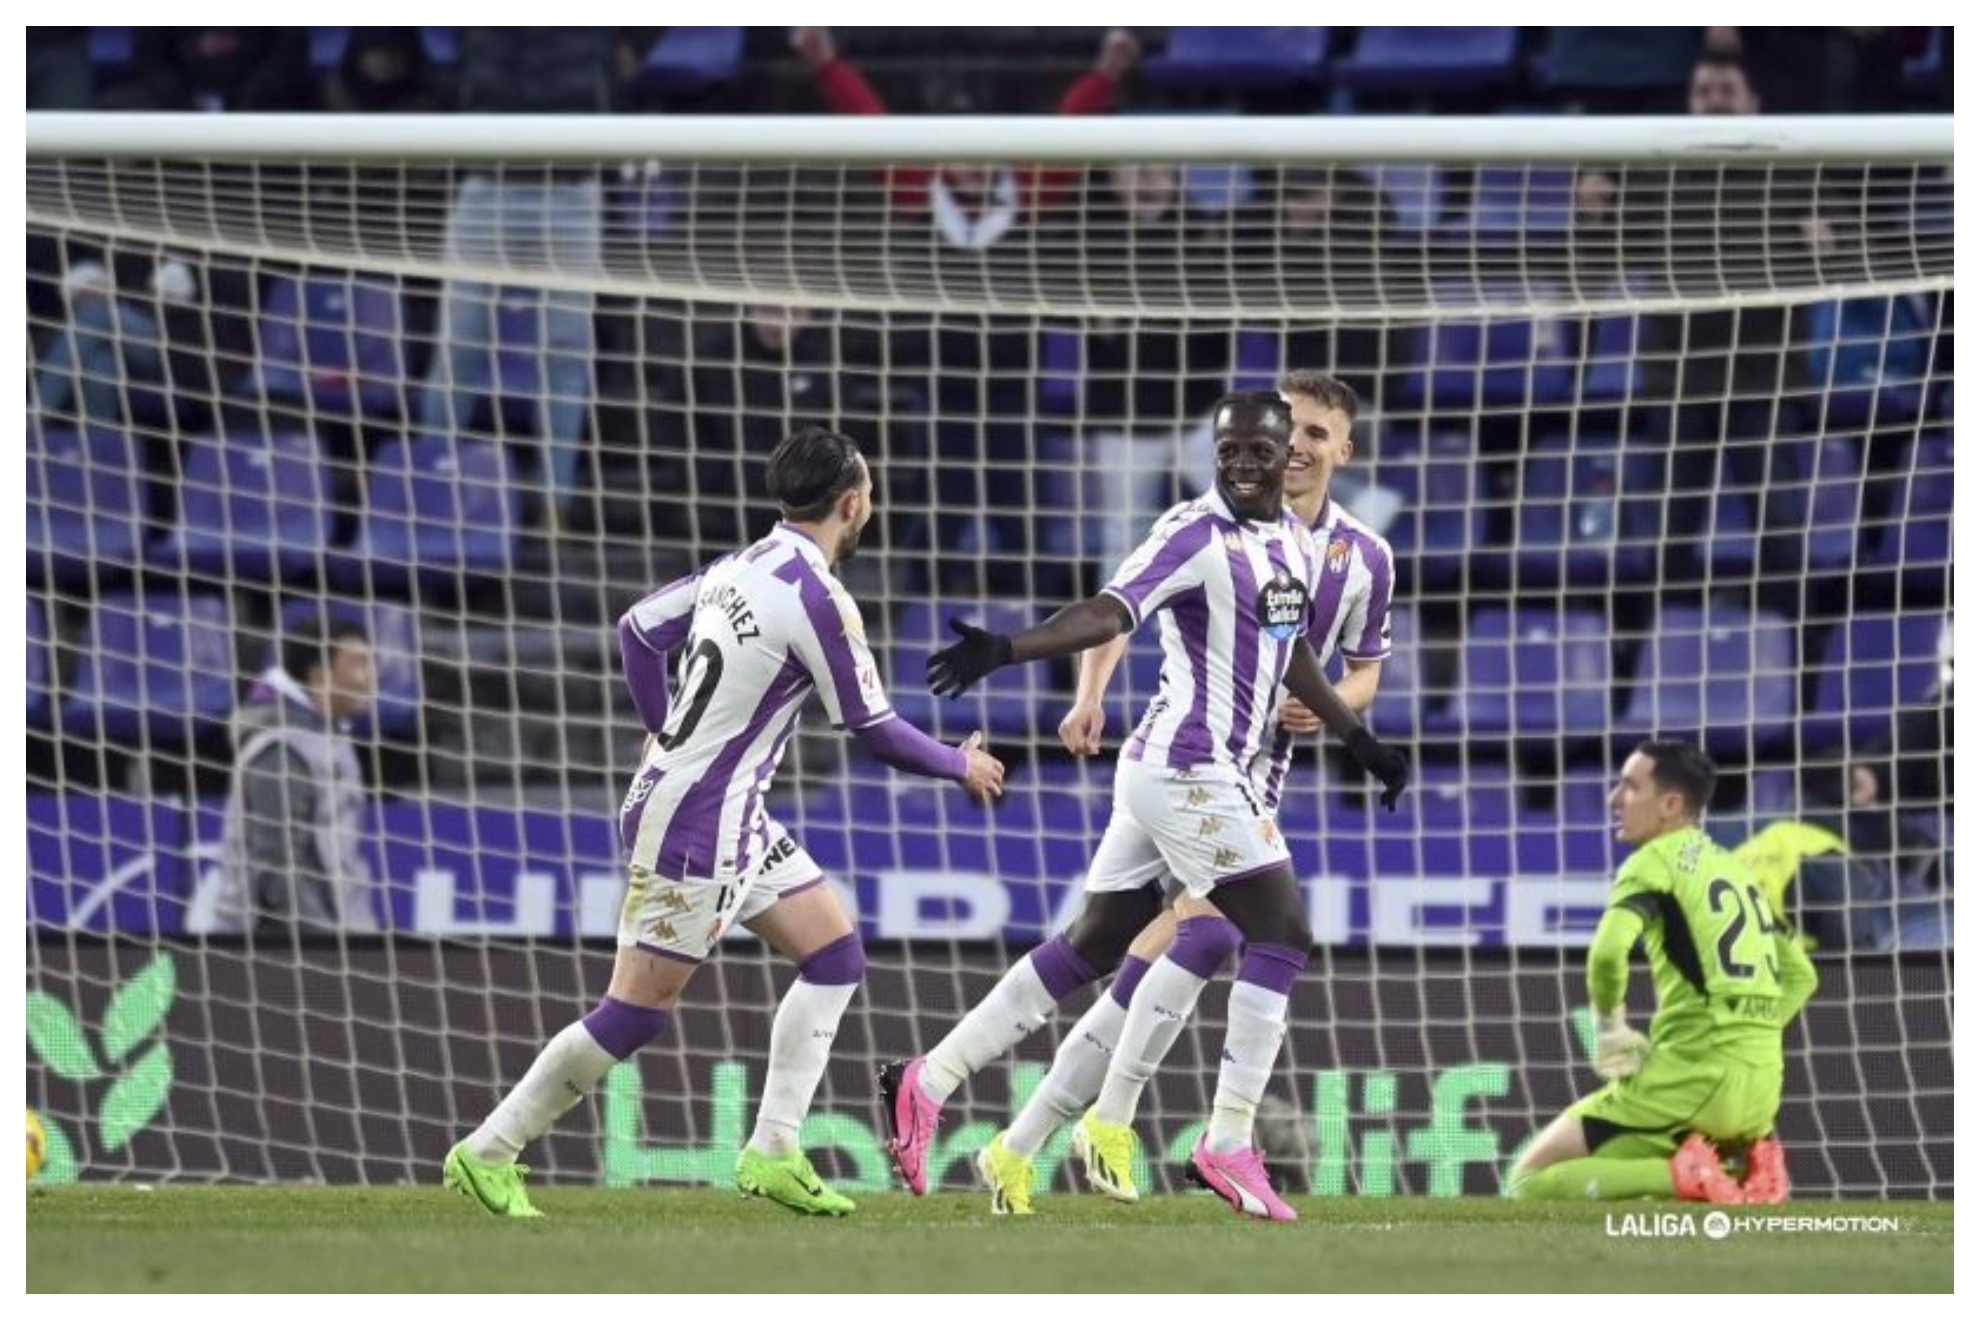 Amath celebra su primer gol al Zaragoza con el batido Edgar Bada en el suelo